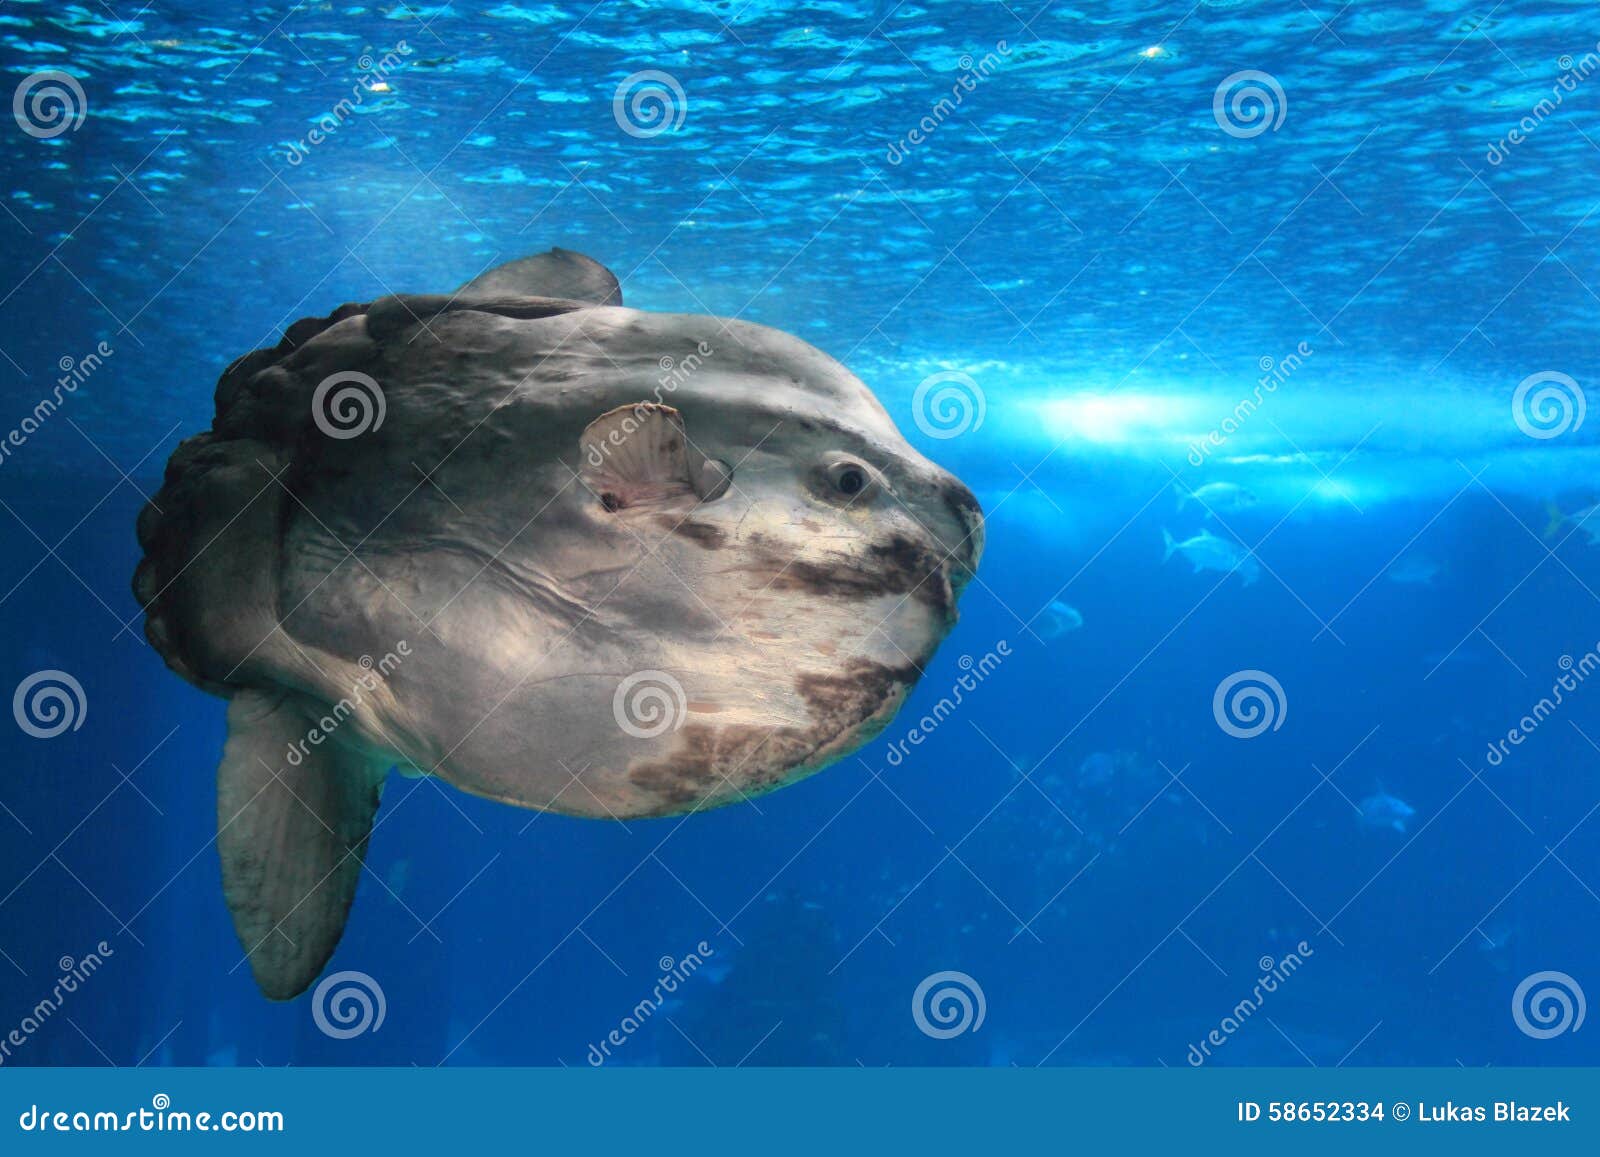 Giant sunfish stock photo. Image of bony, sunshine, nature - 58652334